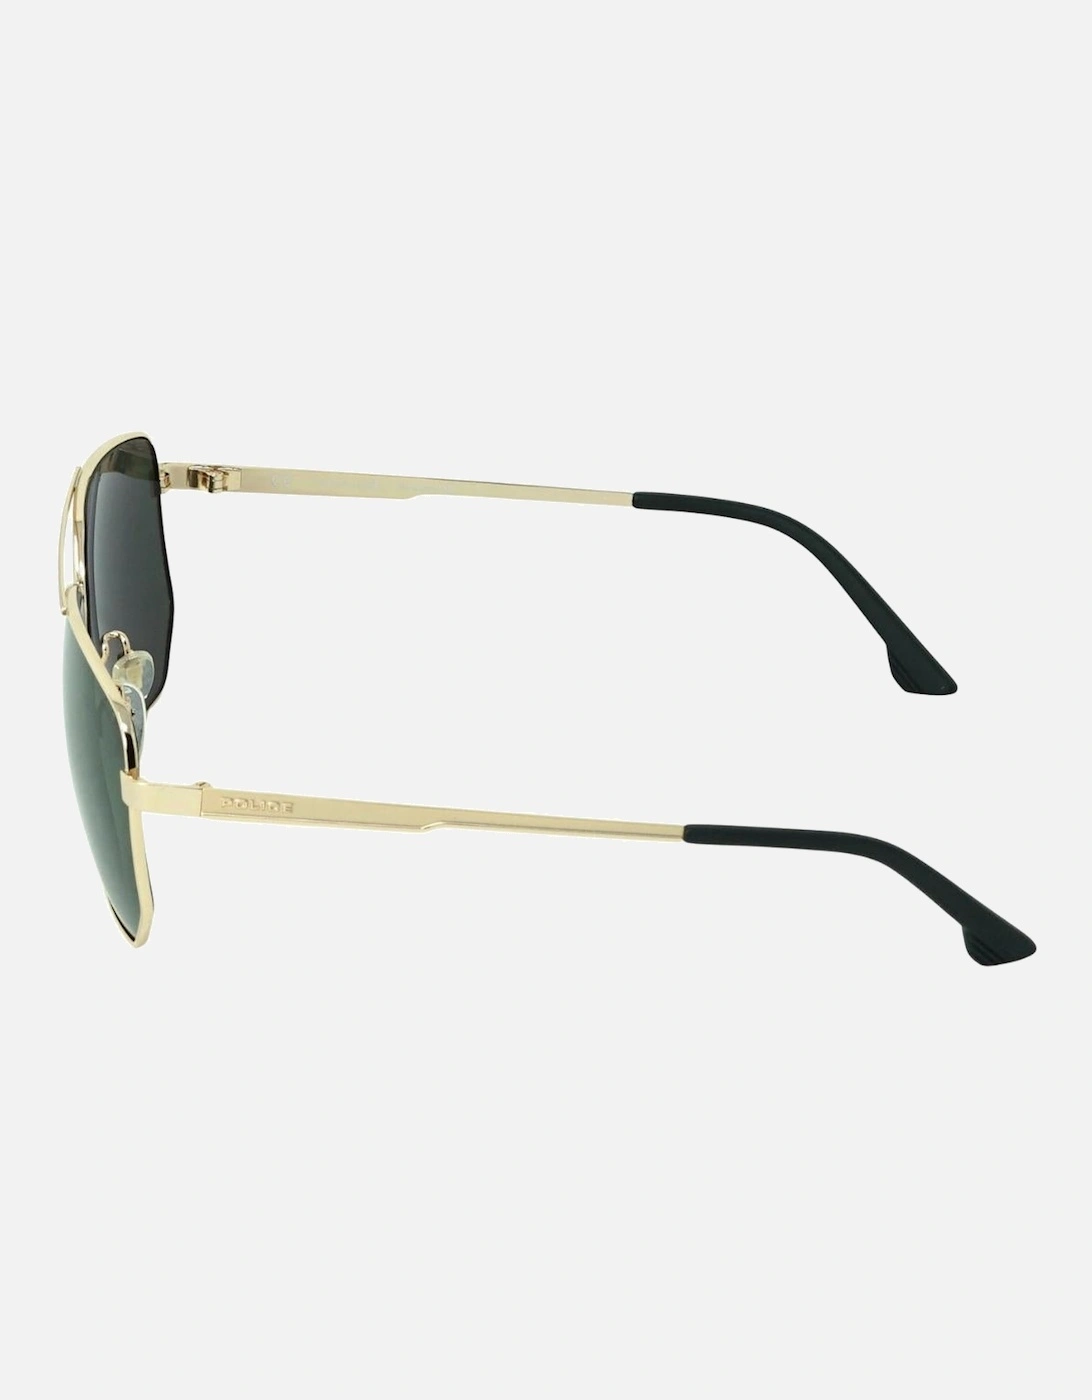 SPLB36M 300G Gold Sunglasses